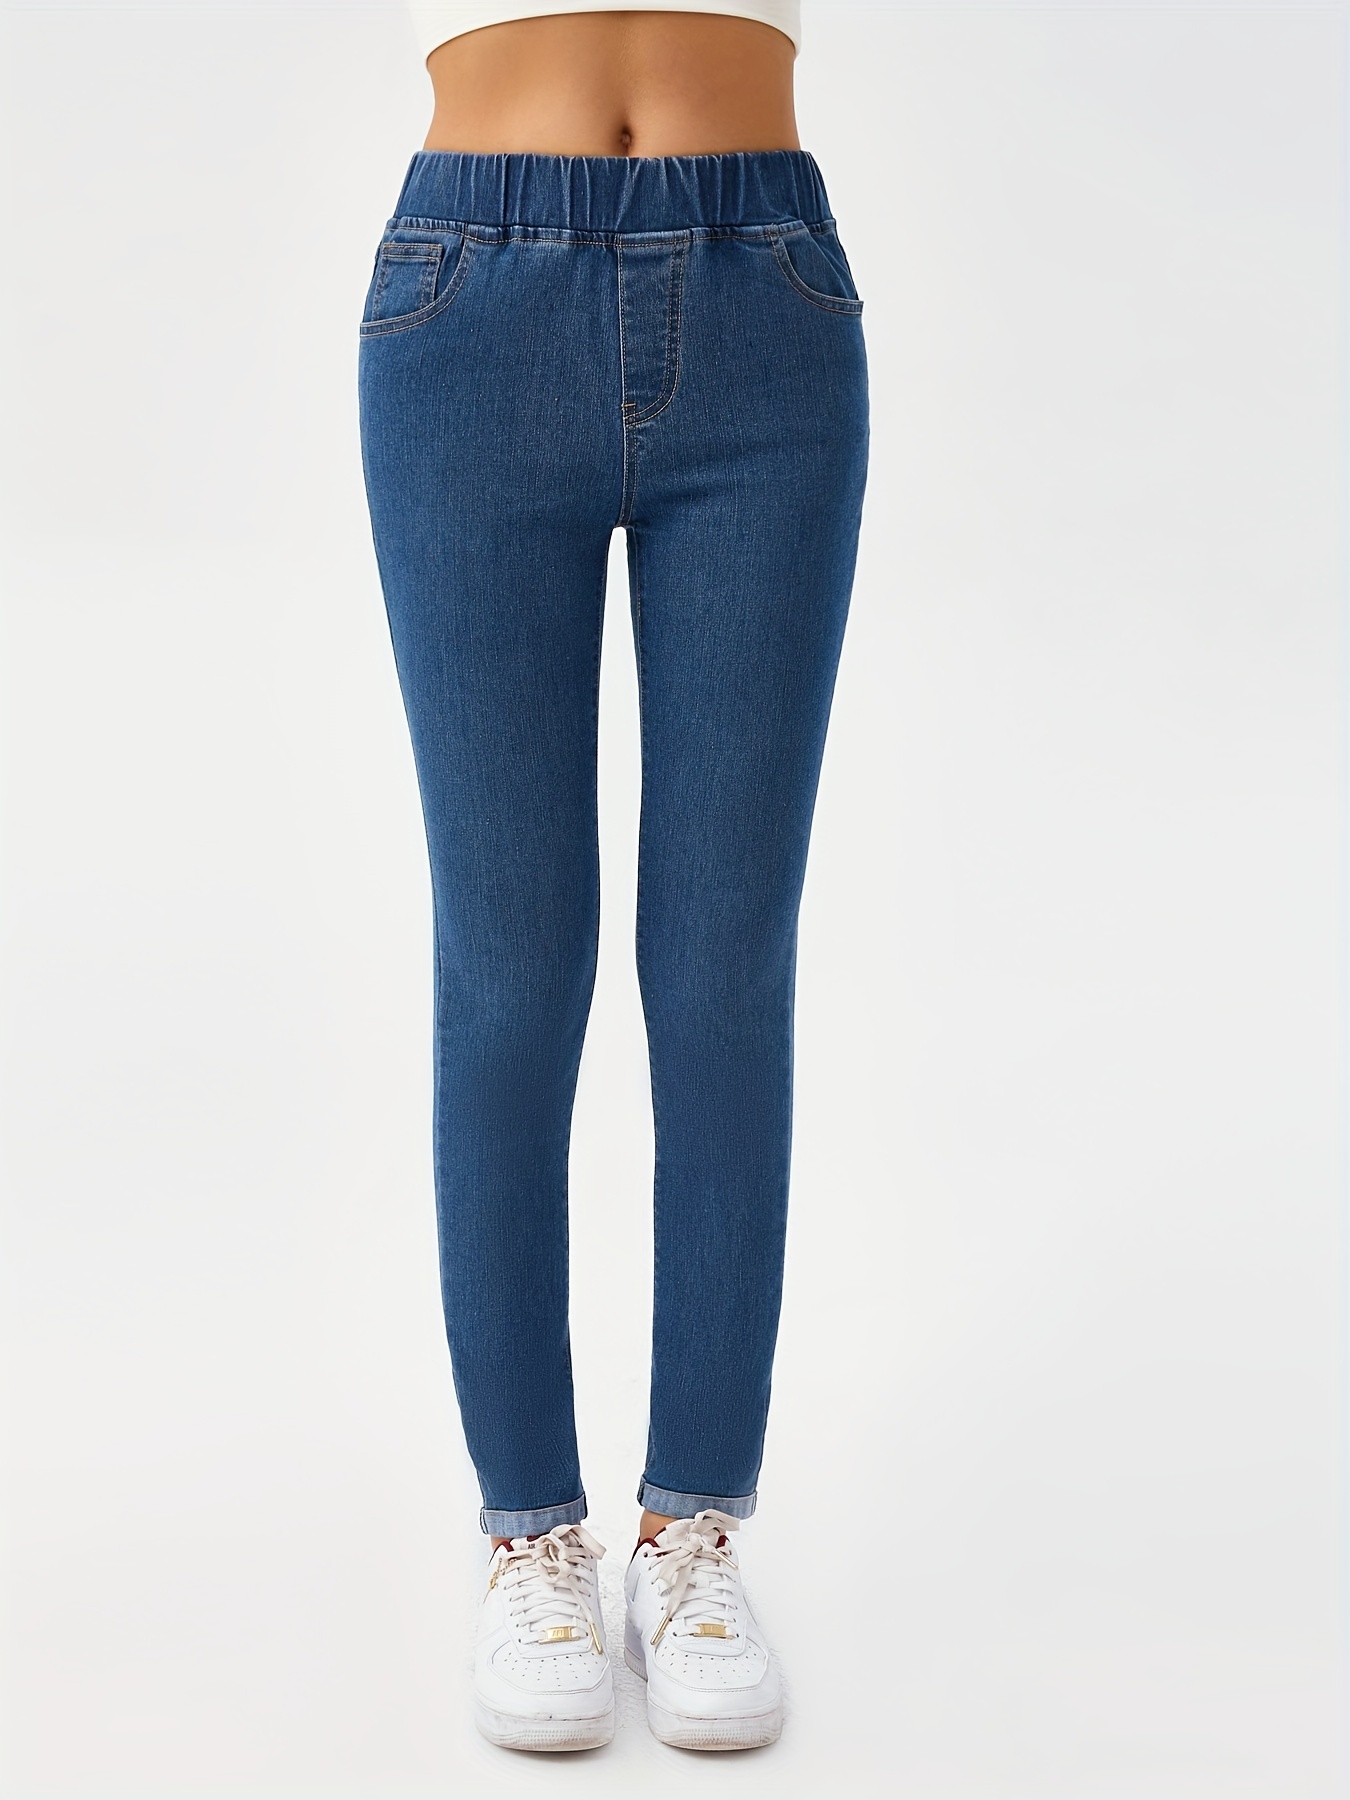 Pantalones Vaqueros Elásticos Para Mujer Jeans Ajustado De Cintura Elástica  Moda